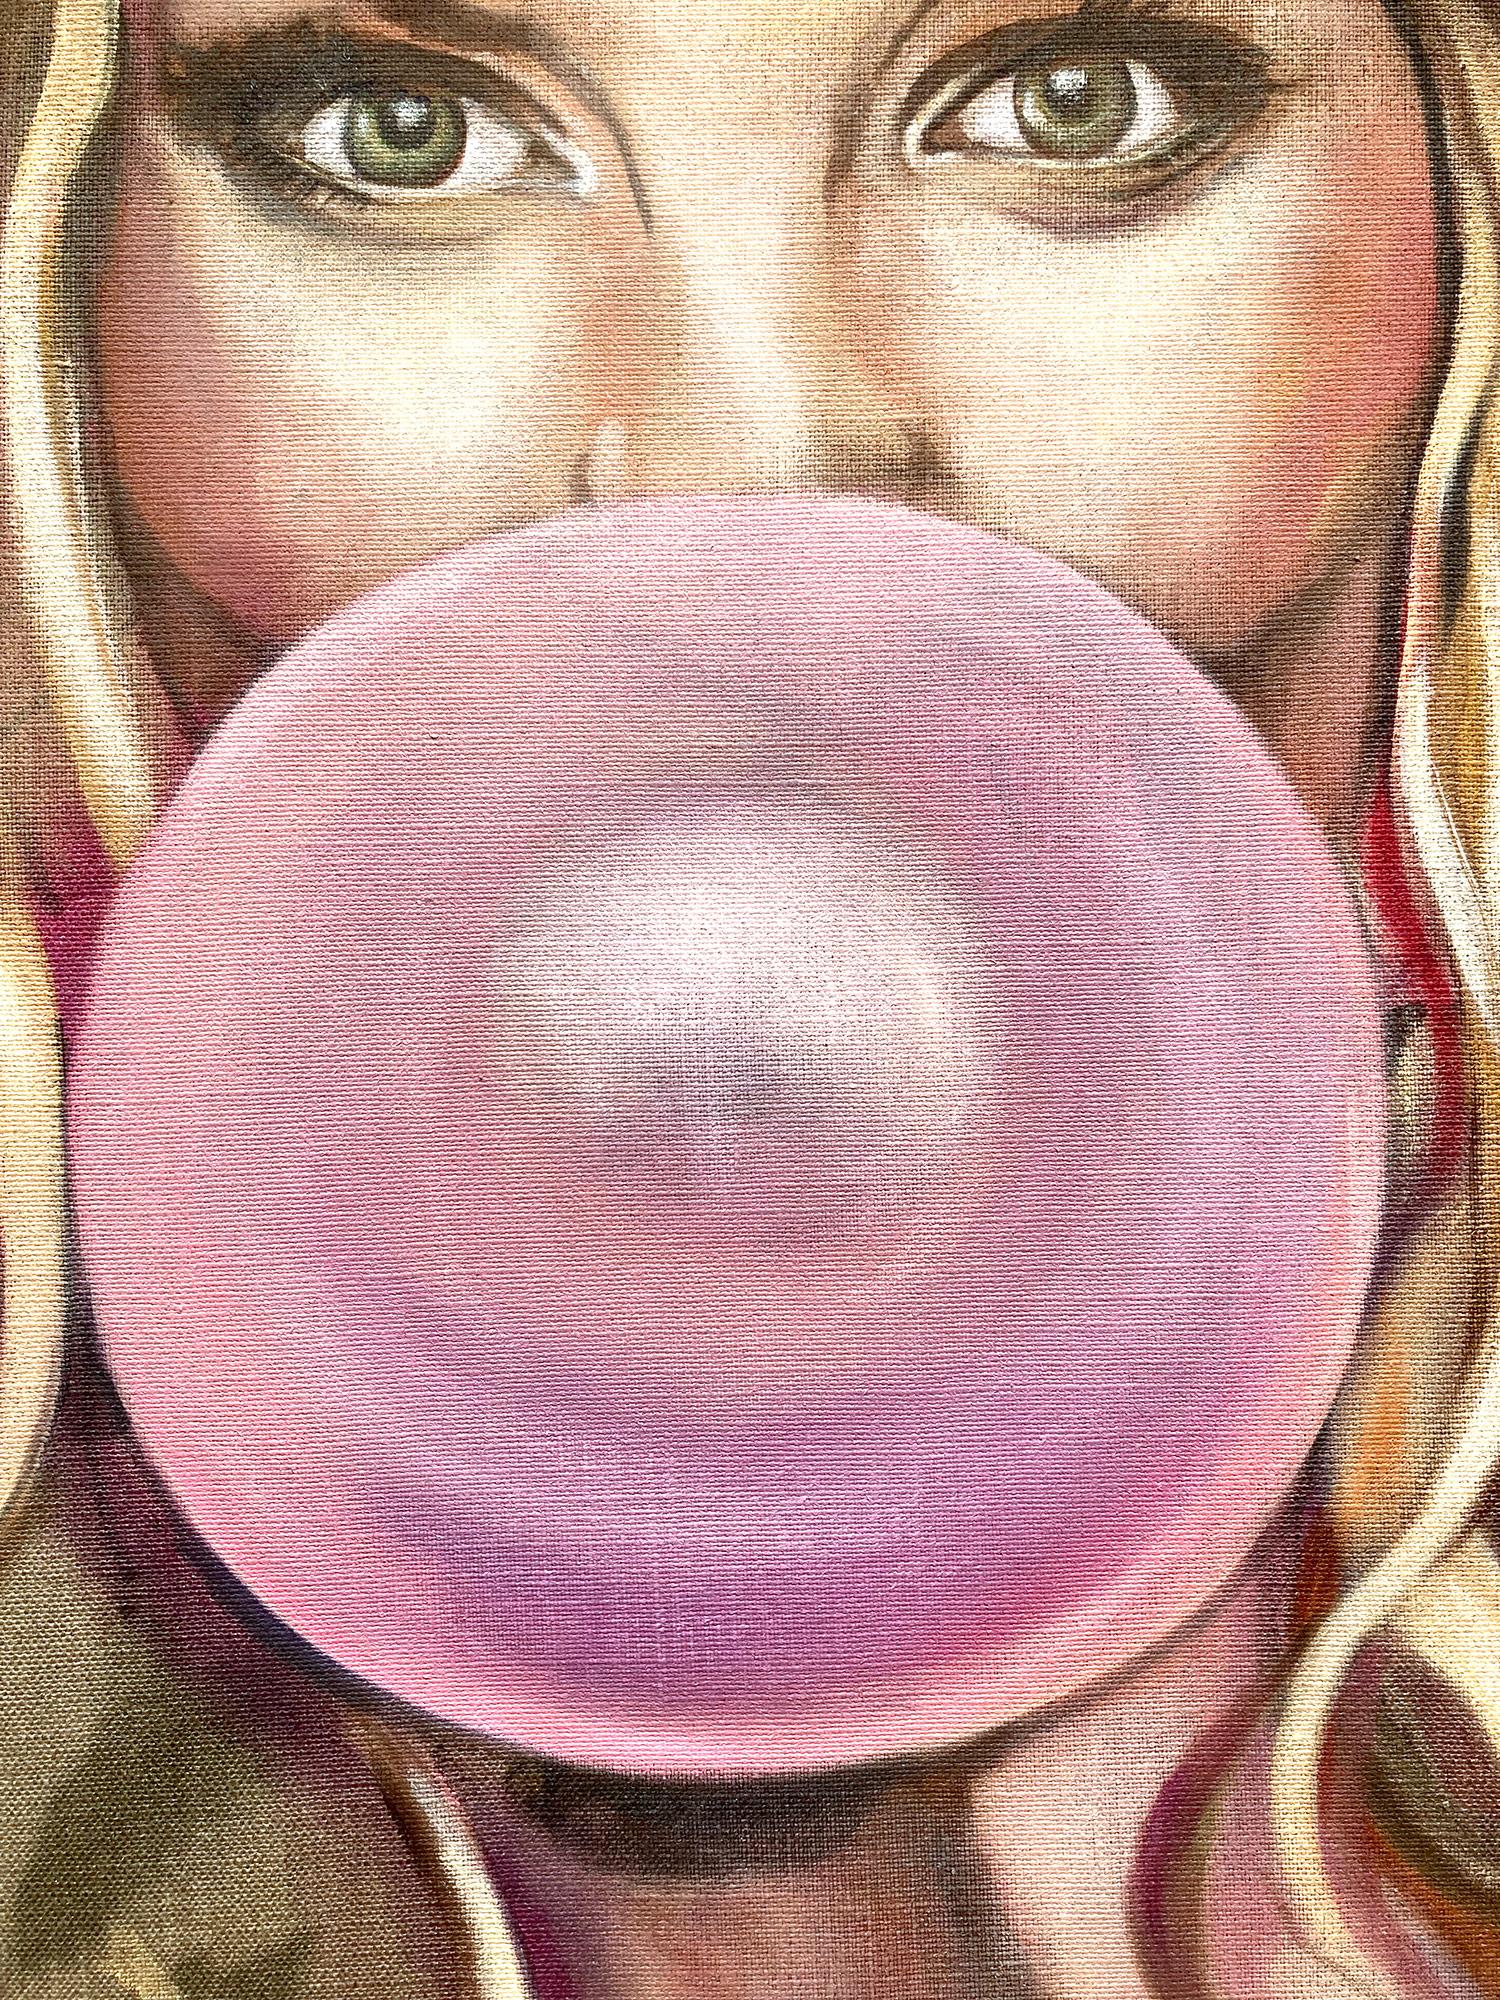 bubble gum artist